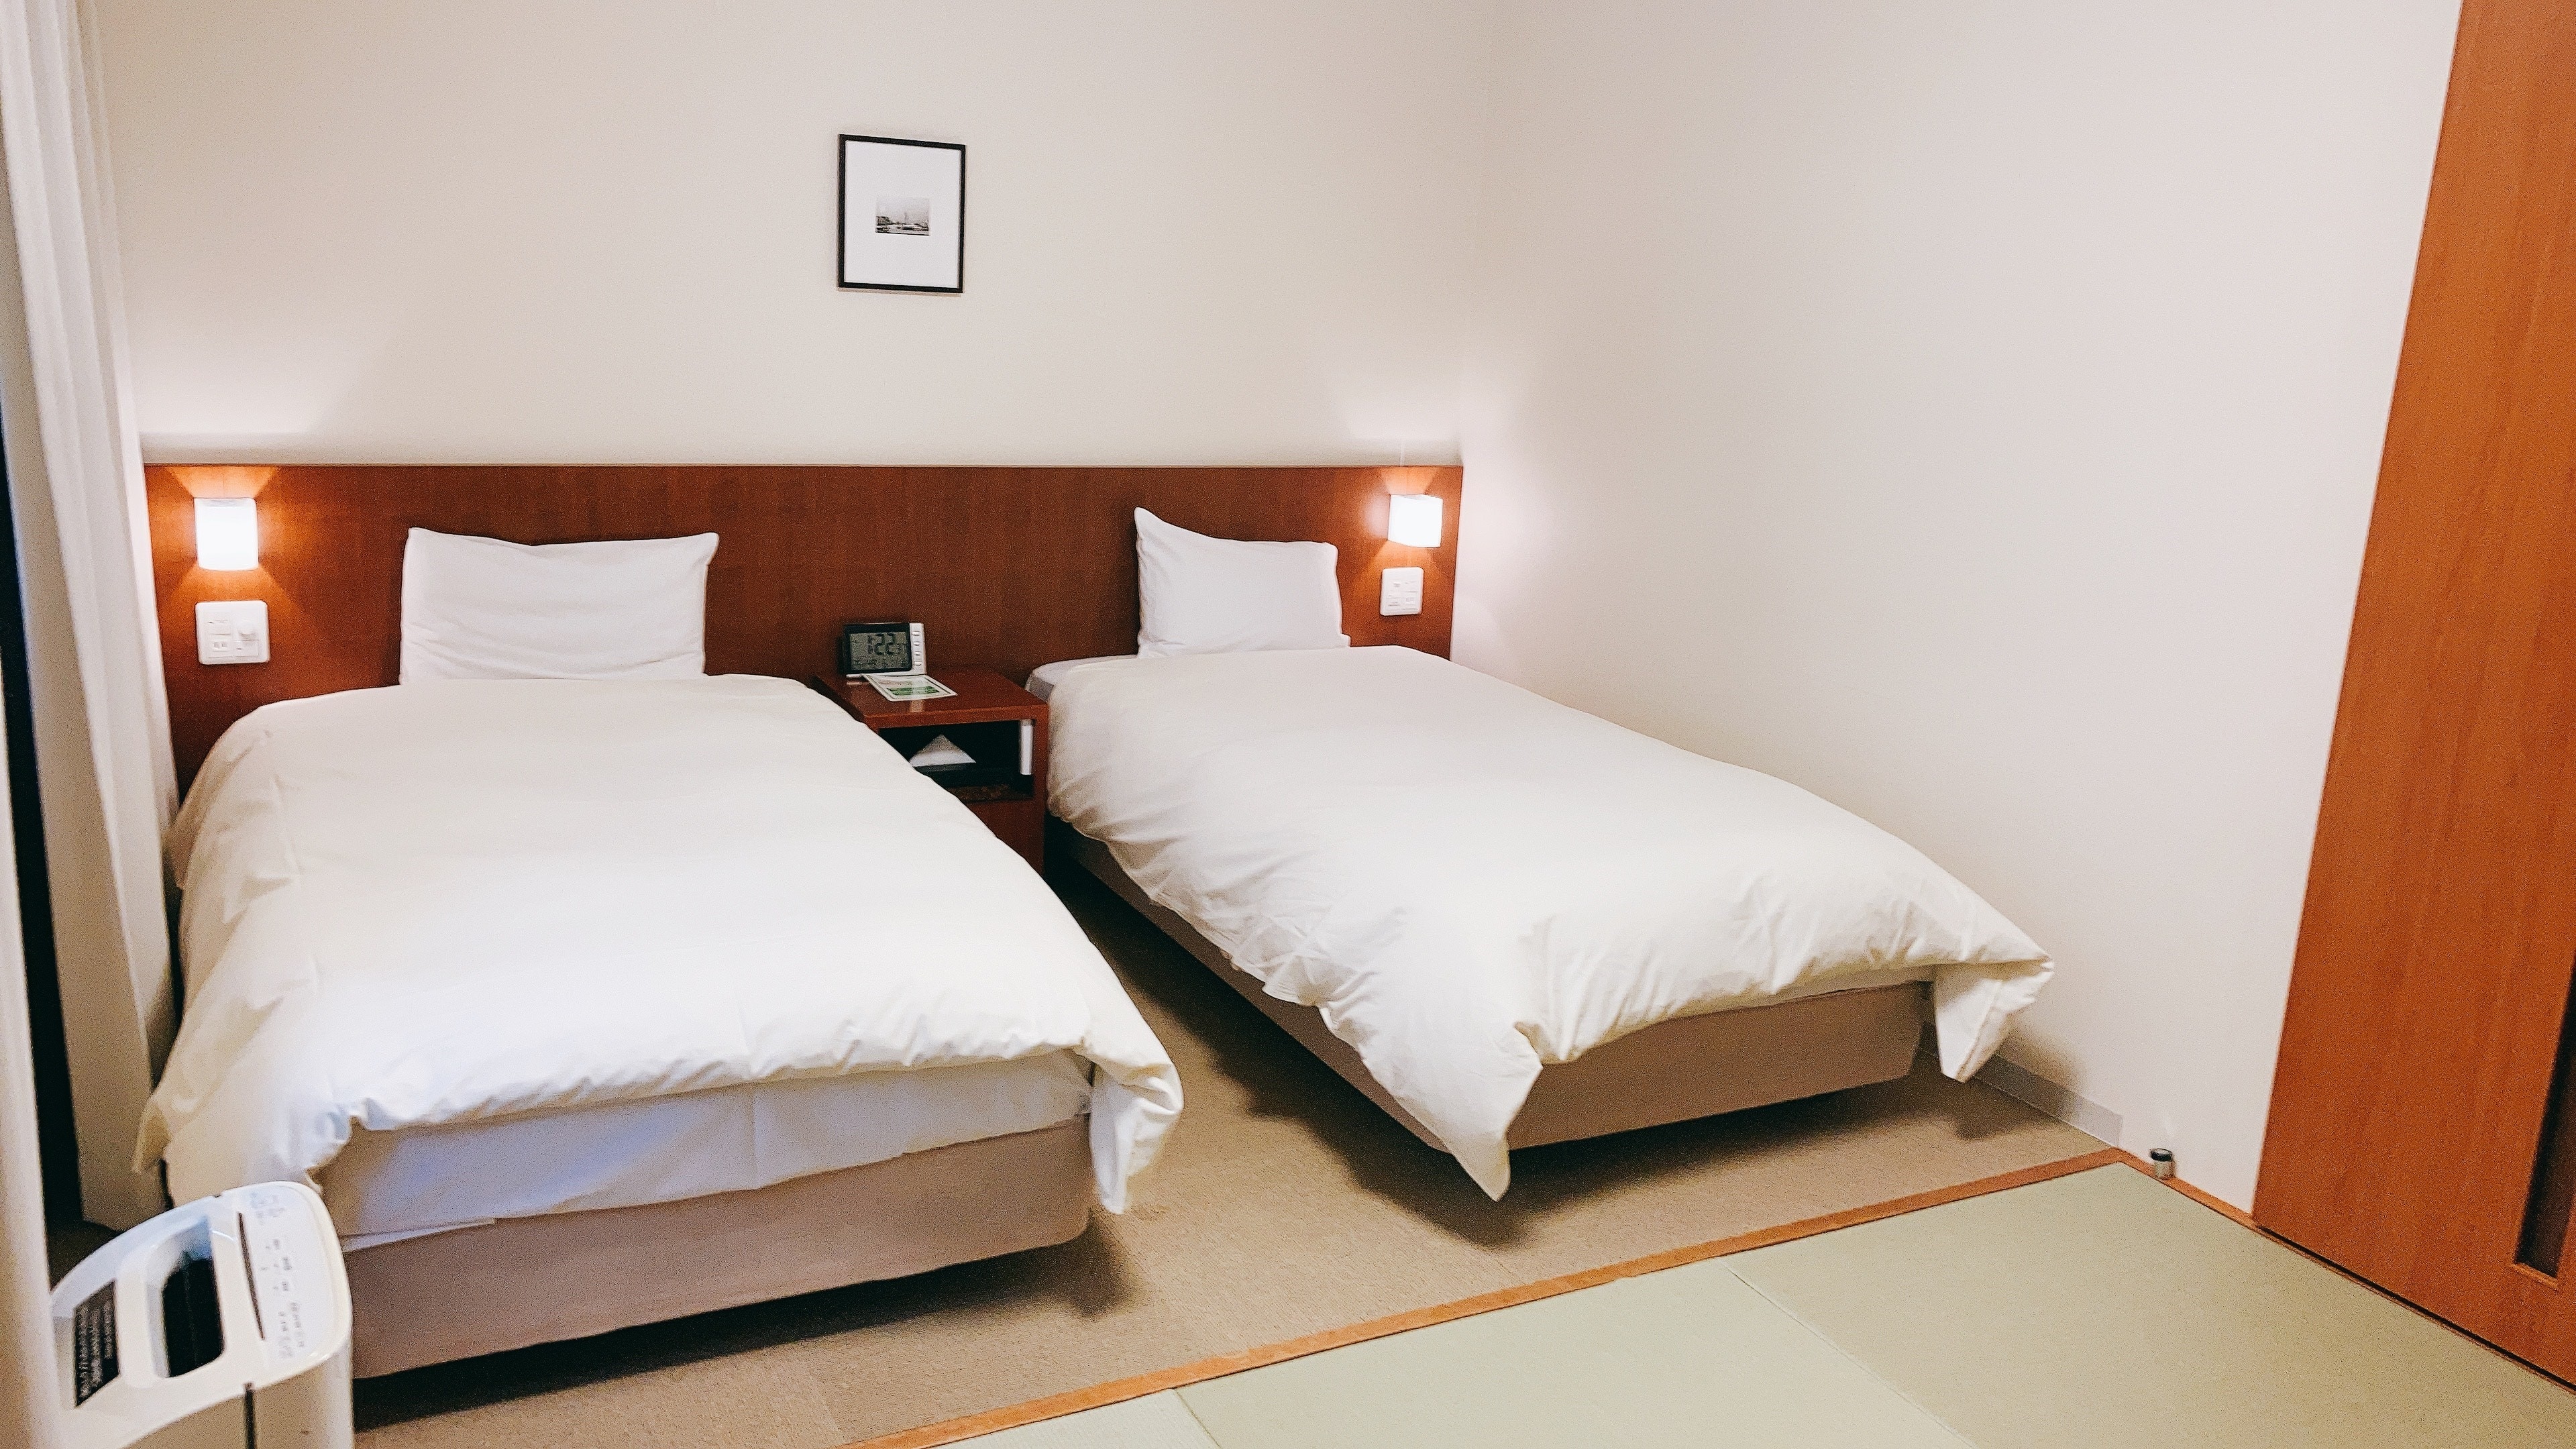 ห้องพักสไตล์ญี่ปุ่น-ตะวันตก 25.5 ตร.ม. สำหรับ 4 คน (2 เตียง 2 ฟูก) ห้องอาบน้ำฝักบัว